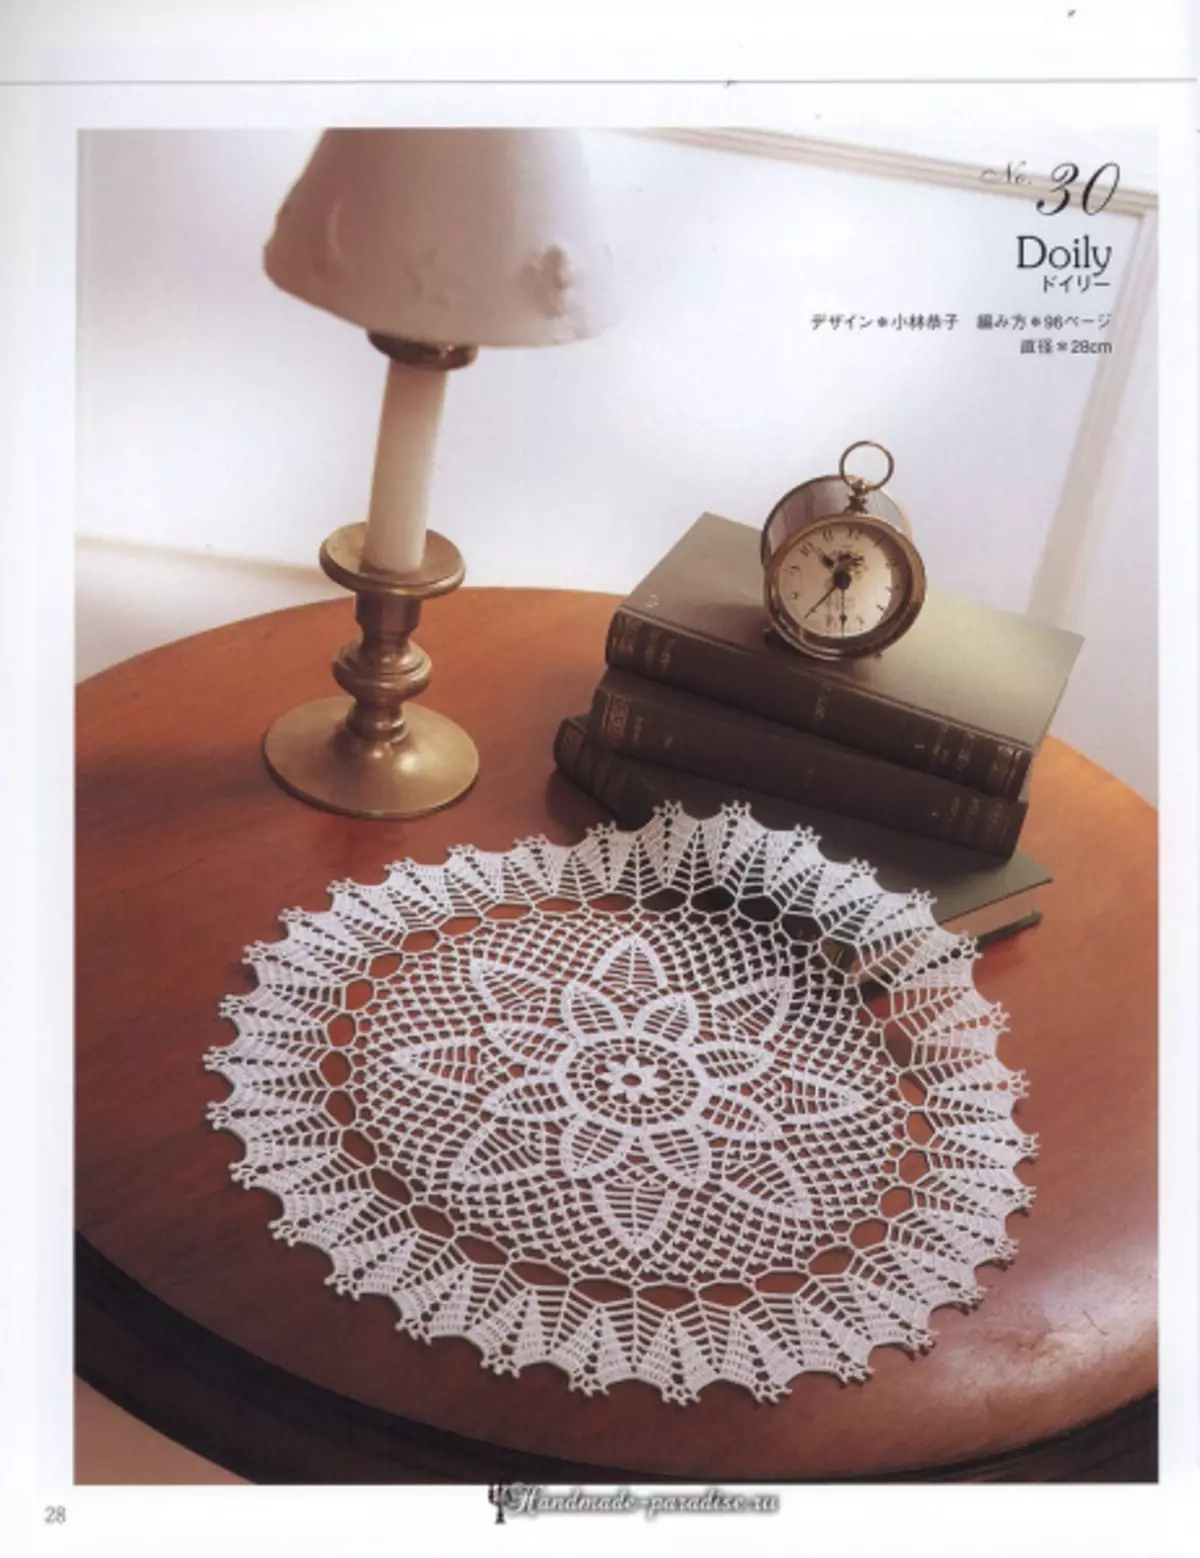 Elegant Crochet Lace 2019 Magazine - servetter och virka borddukar